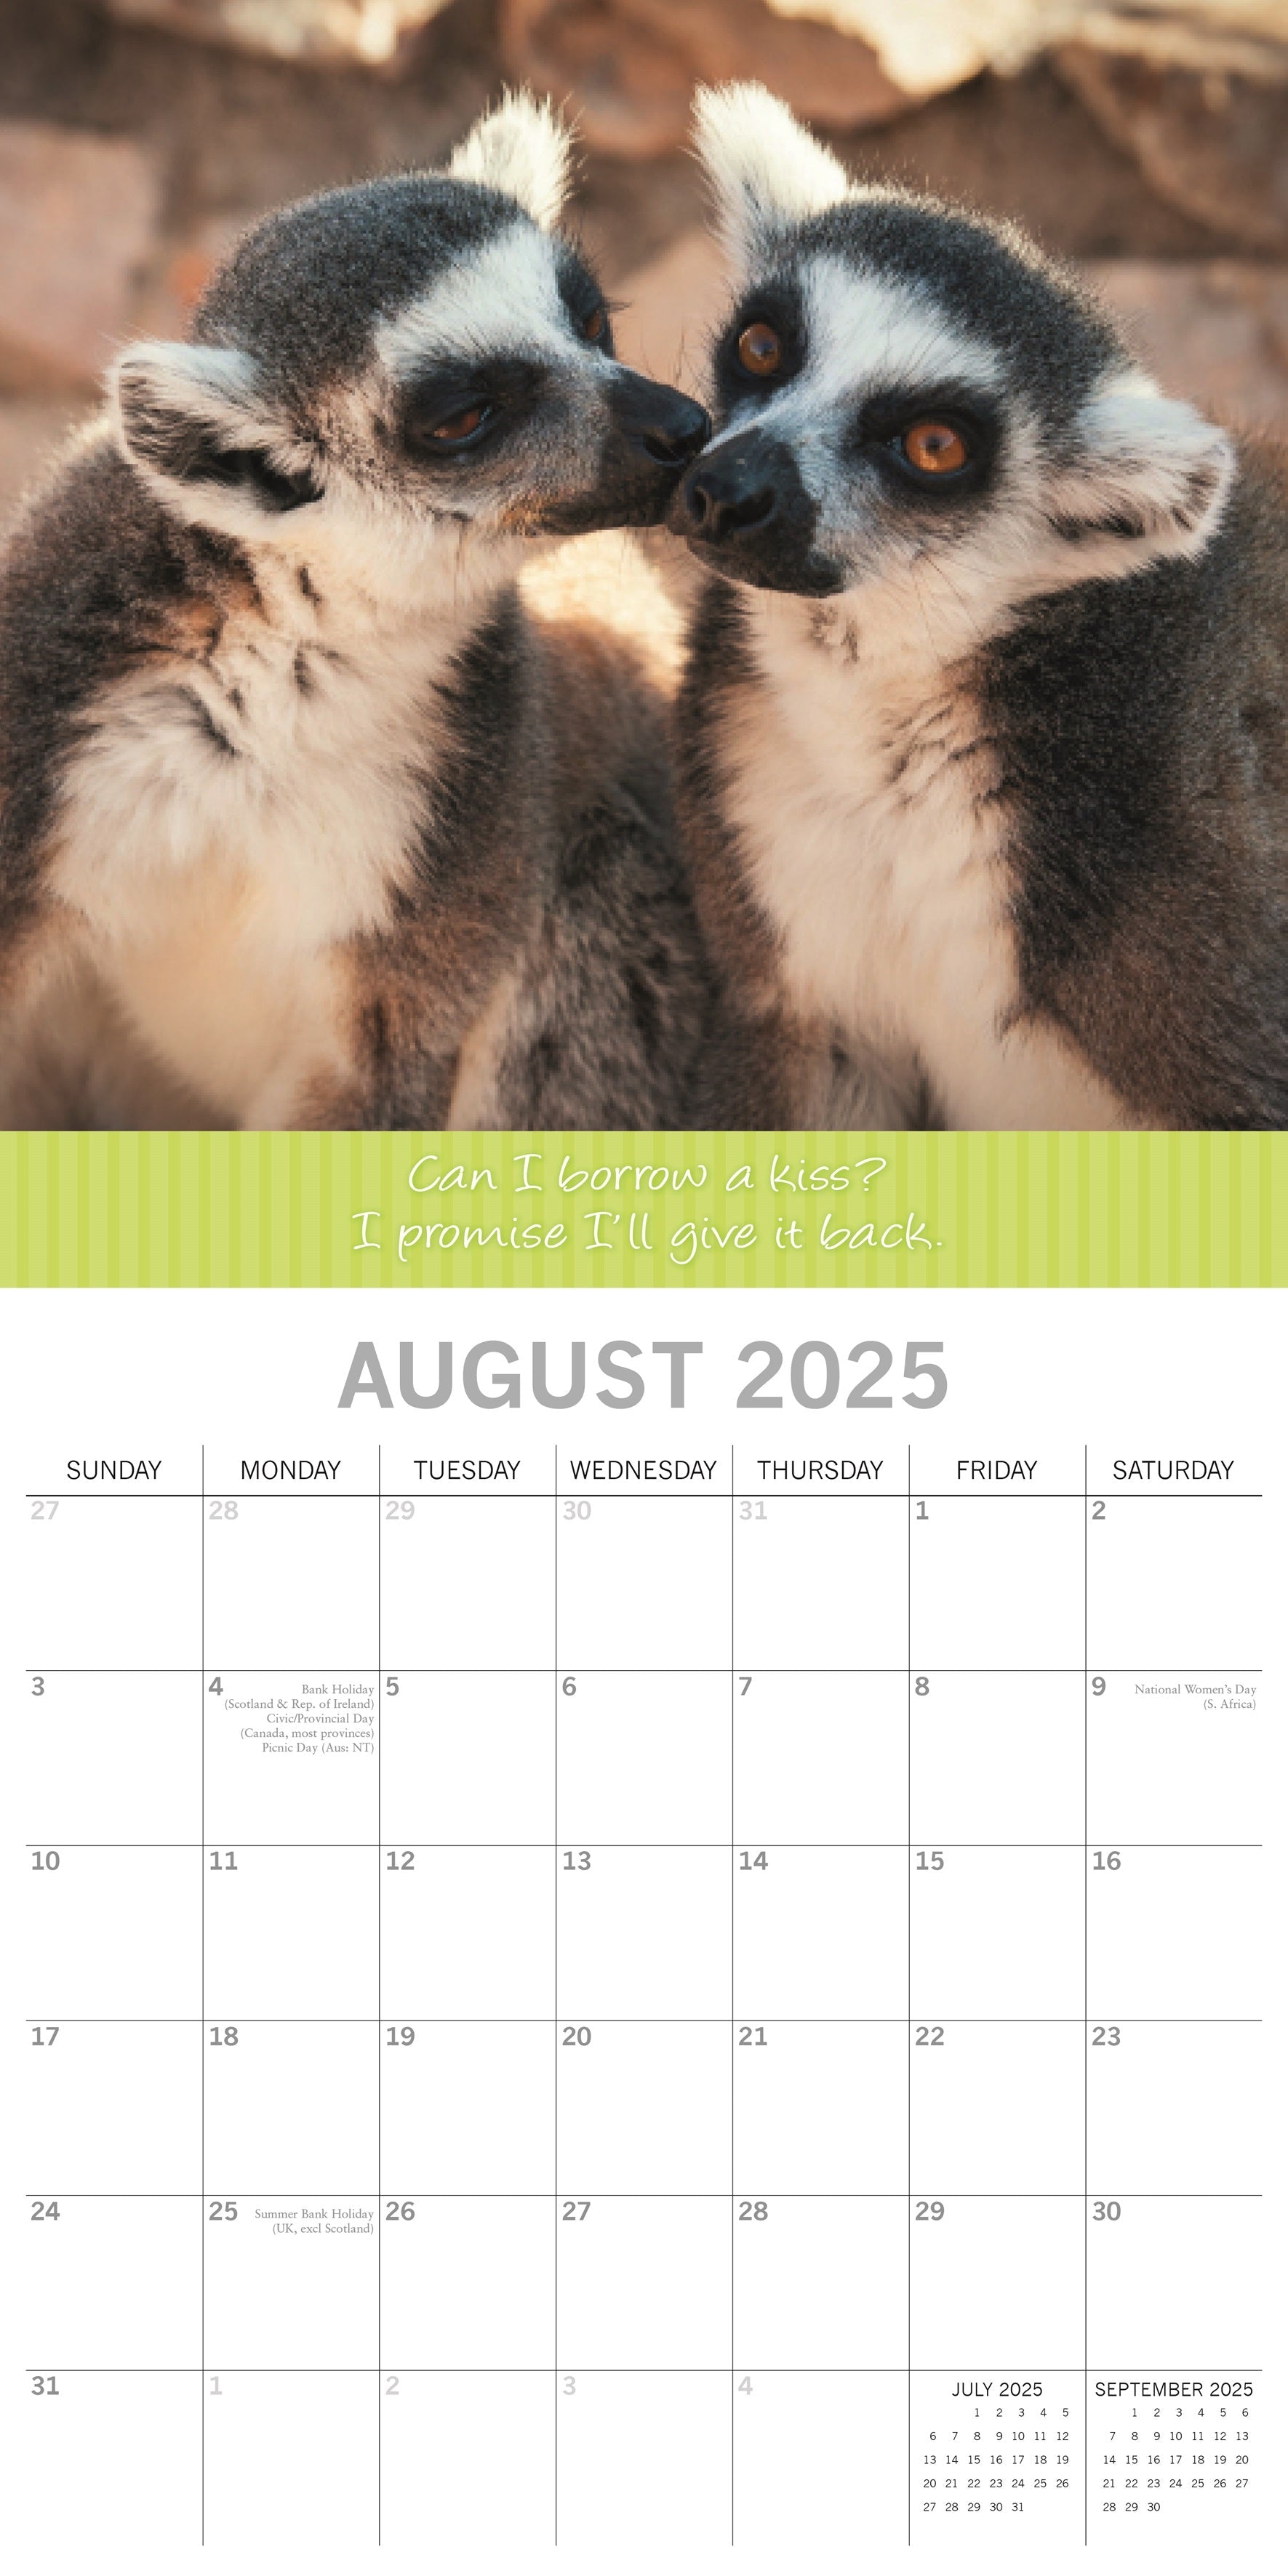 2025 Kisses - Square Wall Calendar